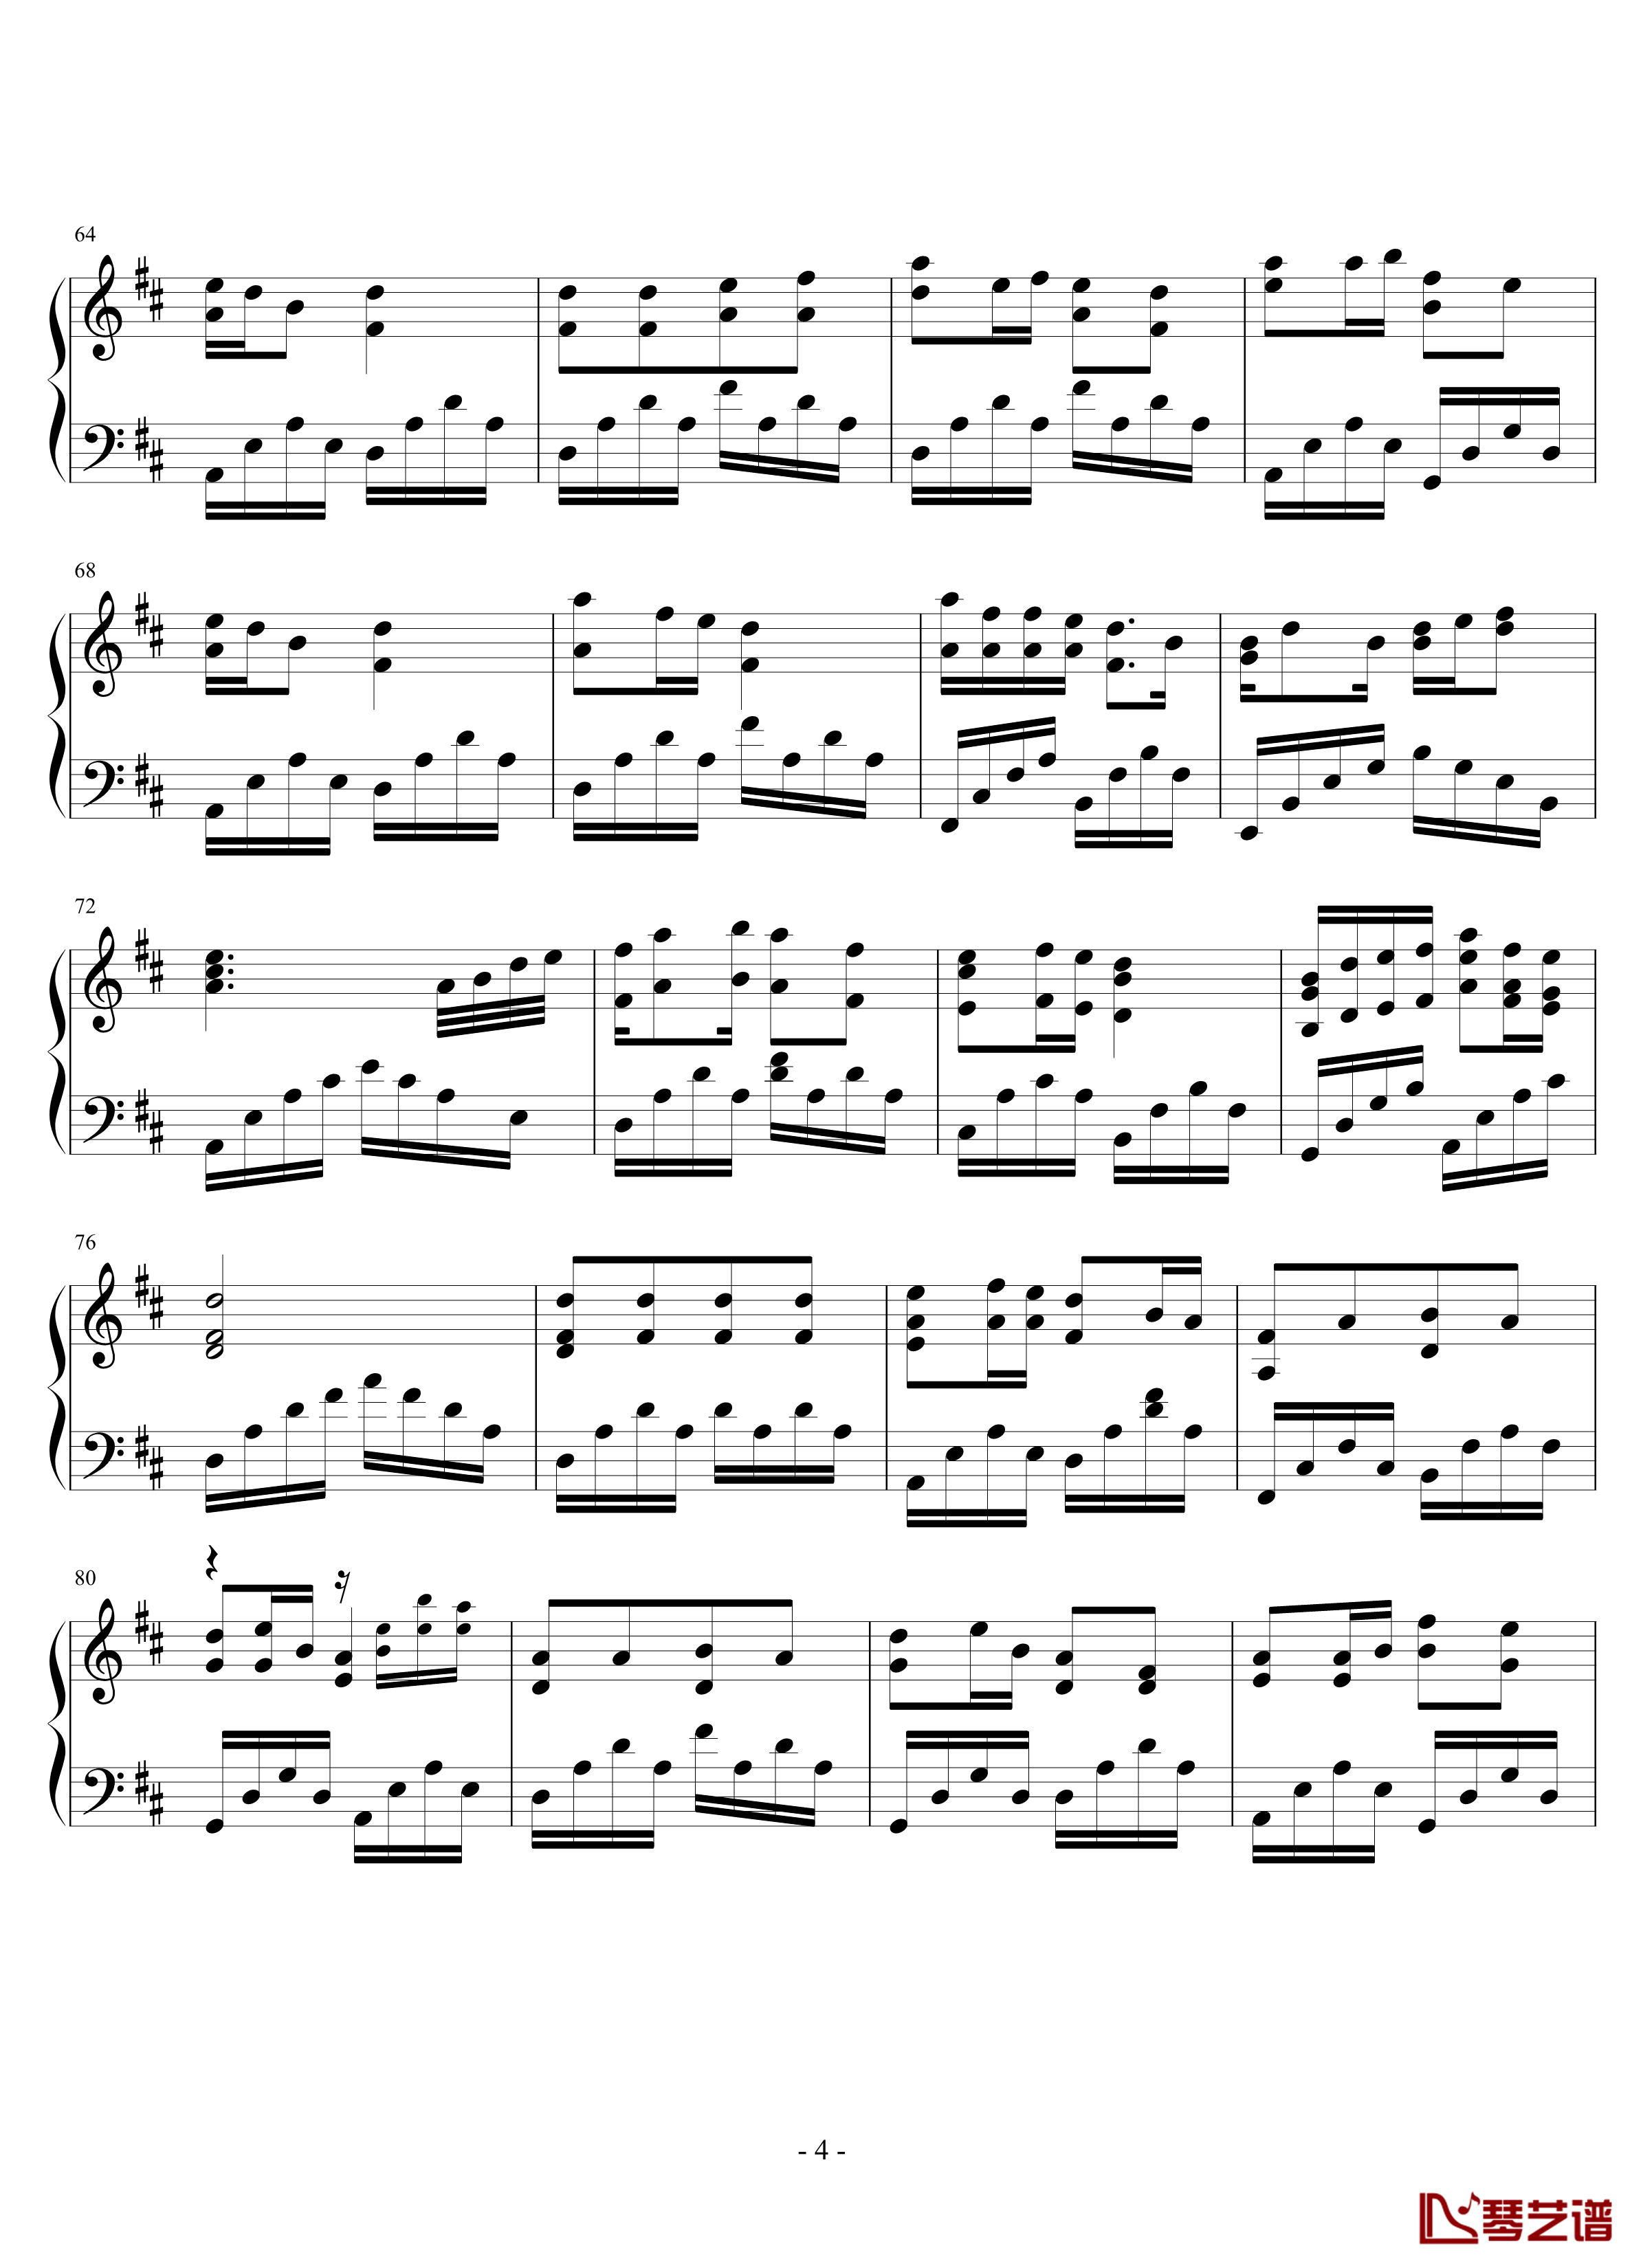 观音心赞钢琴谱-2.0完美版-佛教音乐